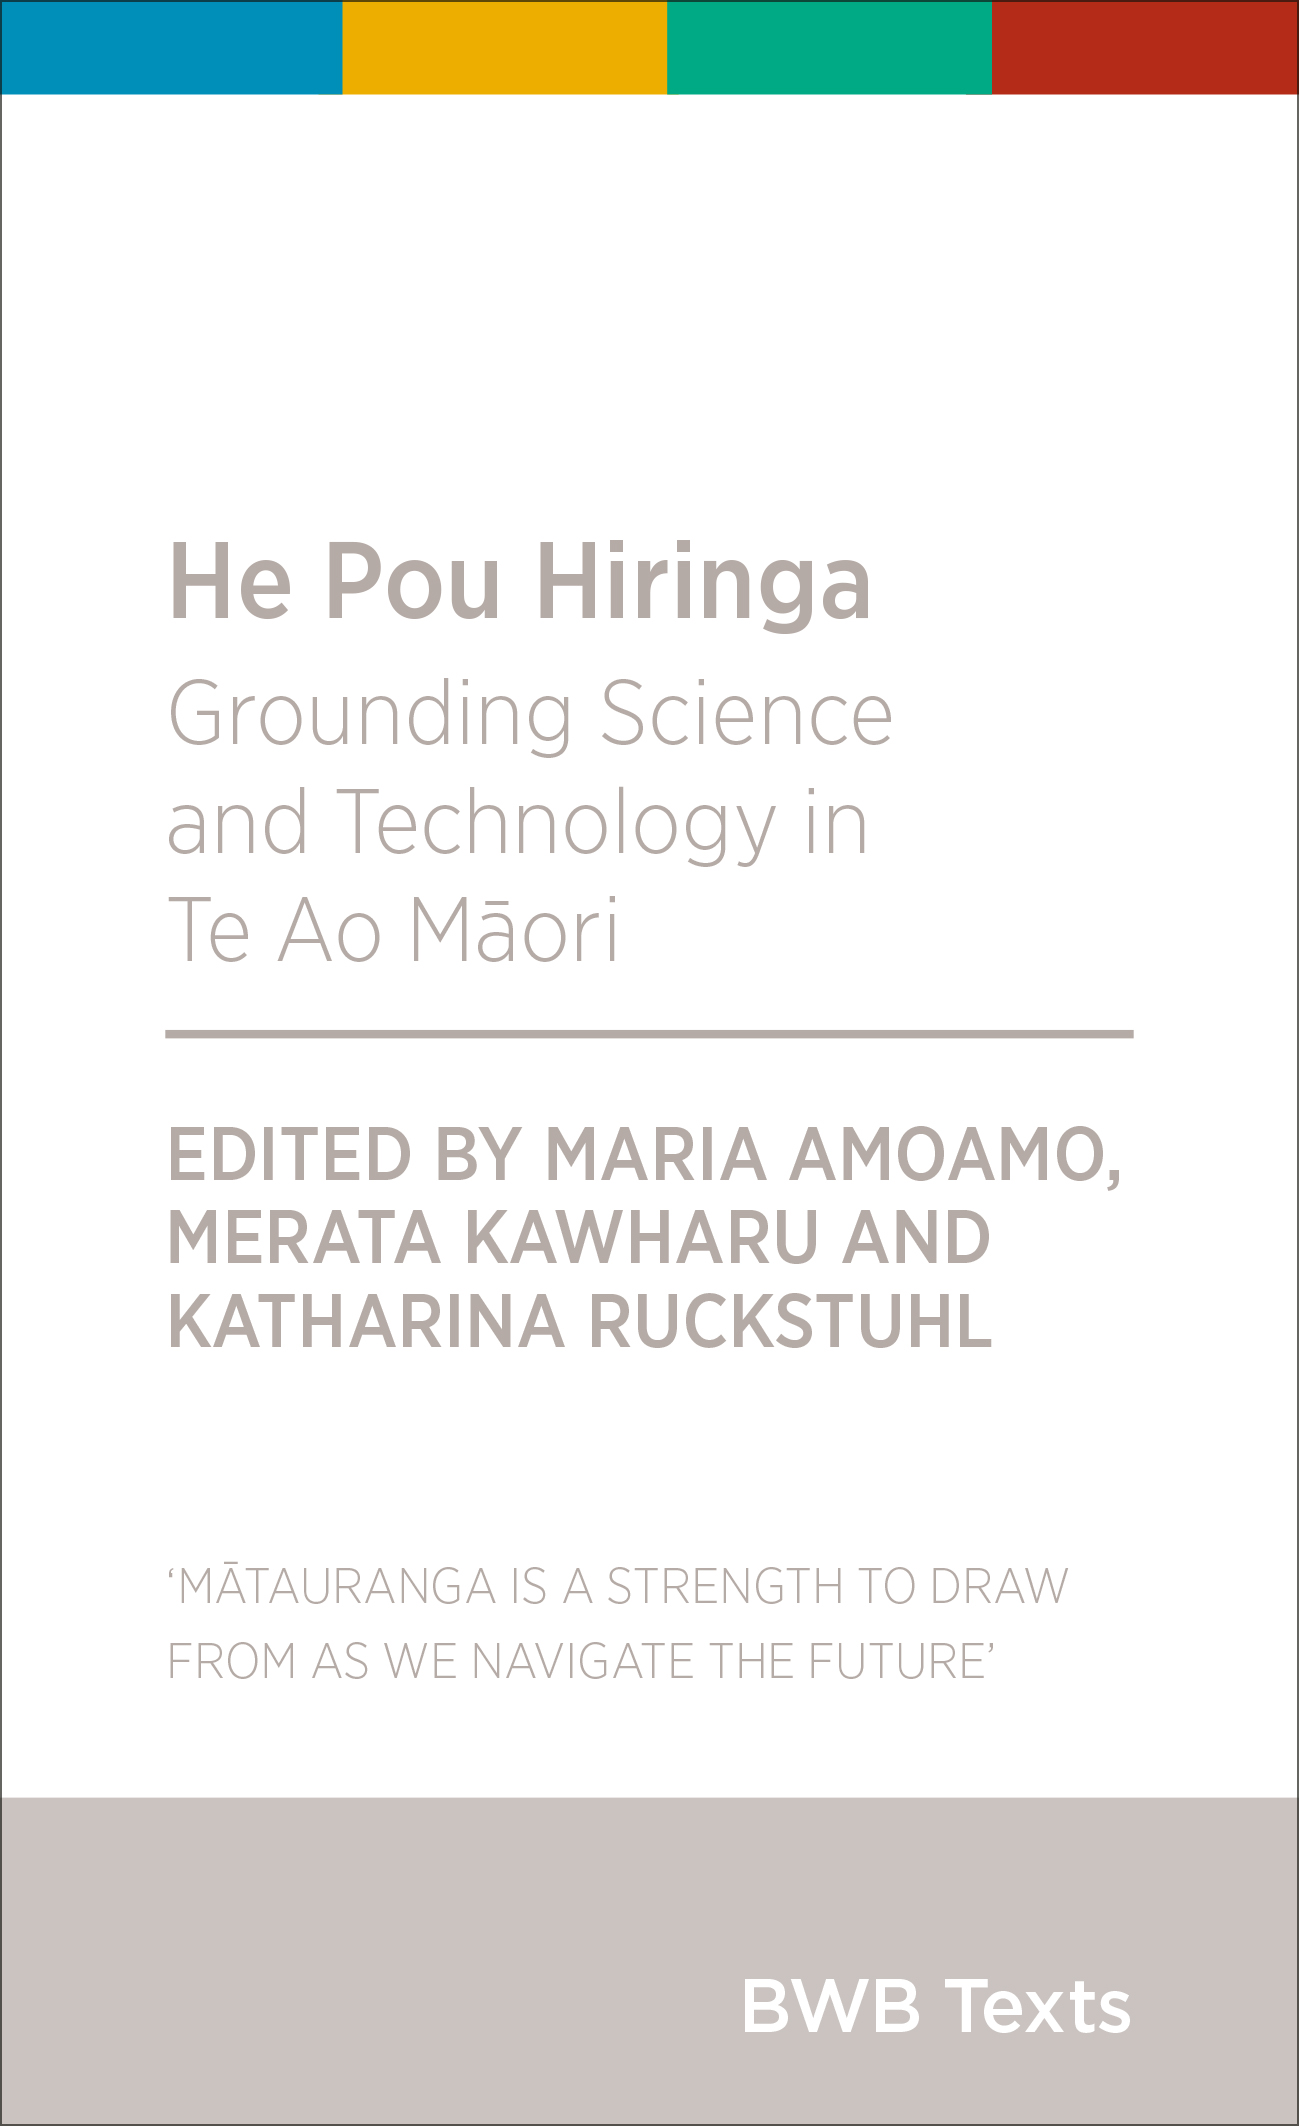 Katharina Ruckstuhl, Merata Kawharu, Maria Amoamo: He Pou Hiringa (Bridget Williams Books)